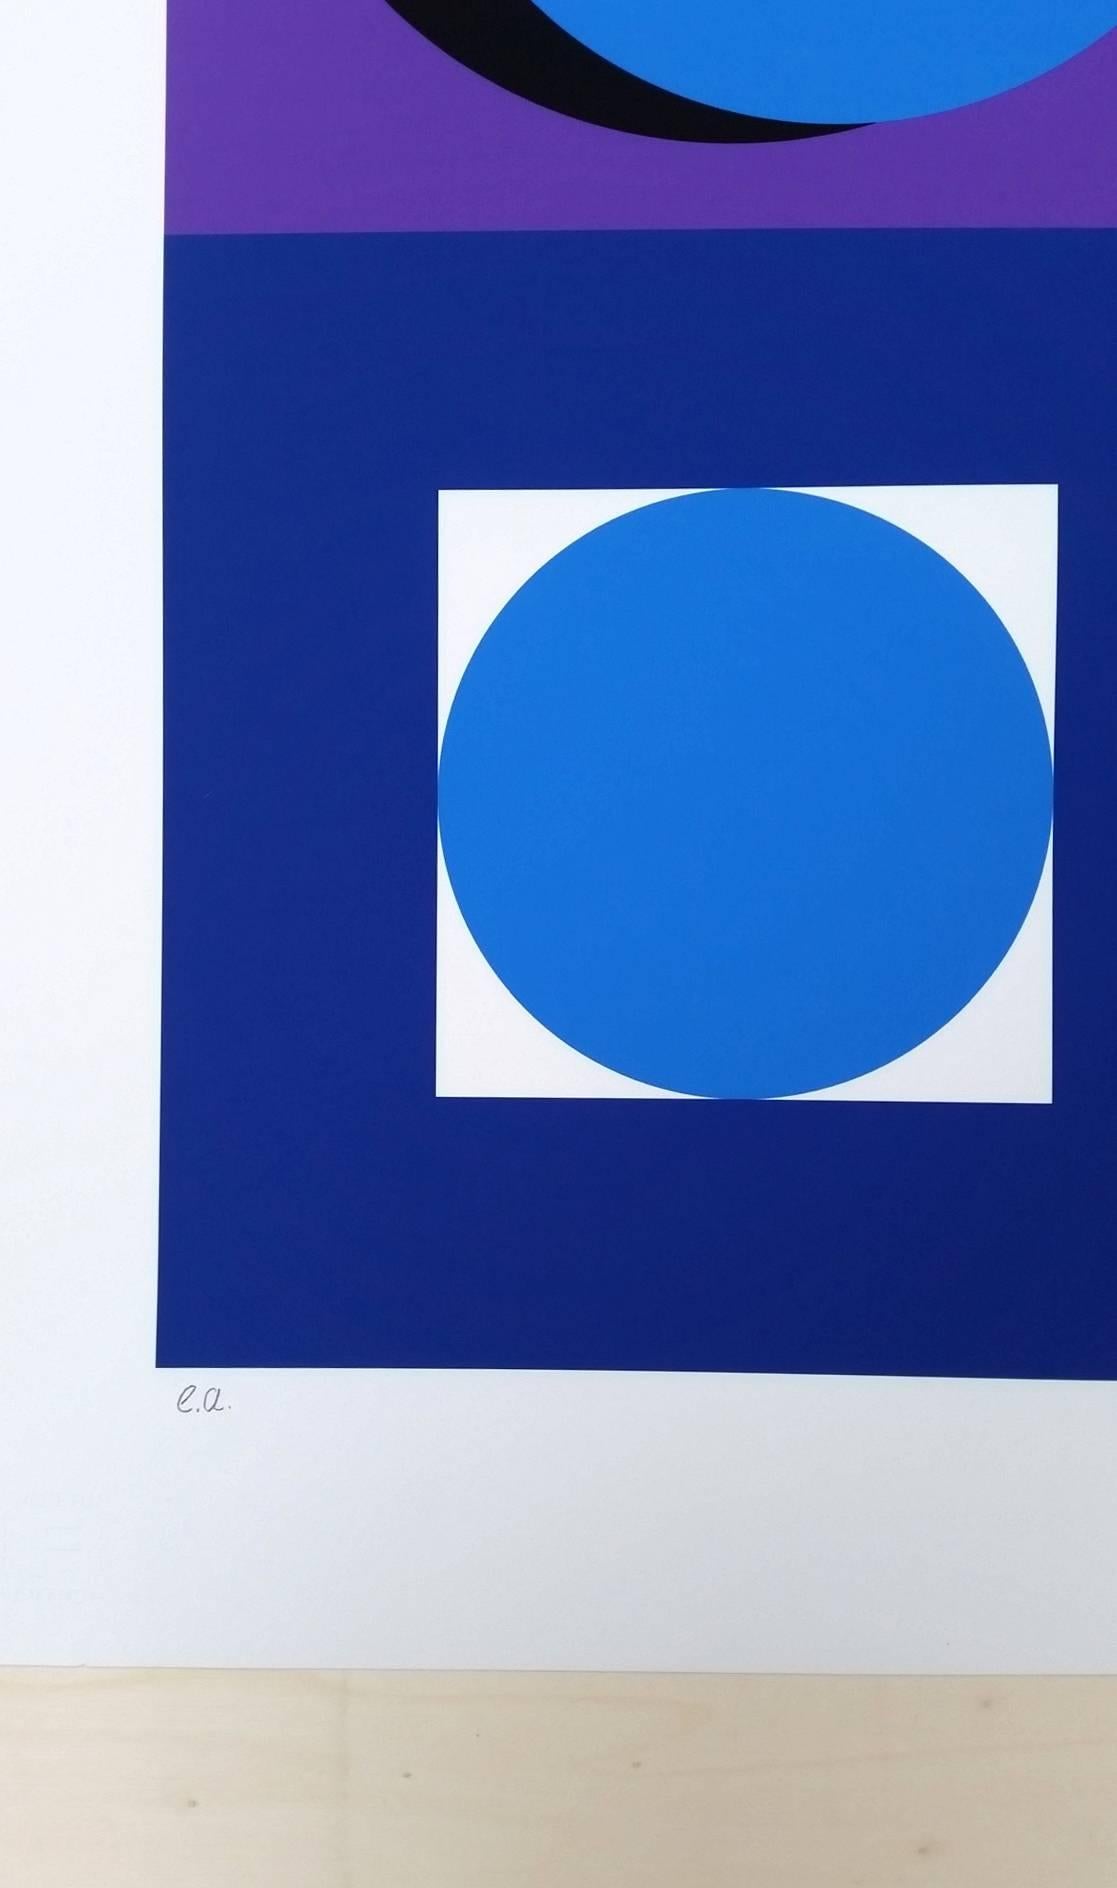 22 - Composition Géometrique - Blue Abstract Print by Geneviève Claisse